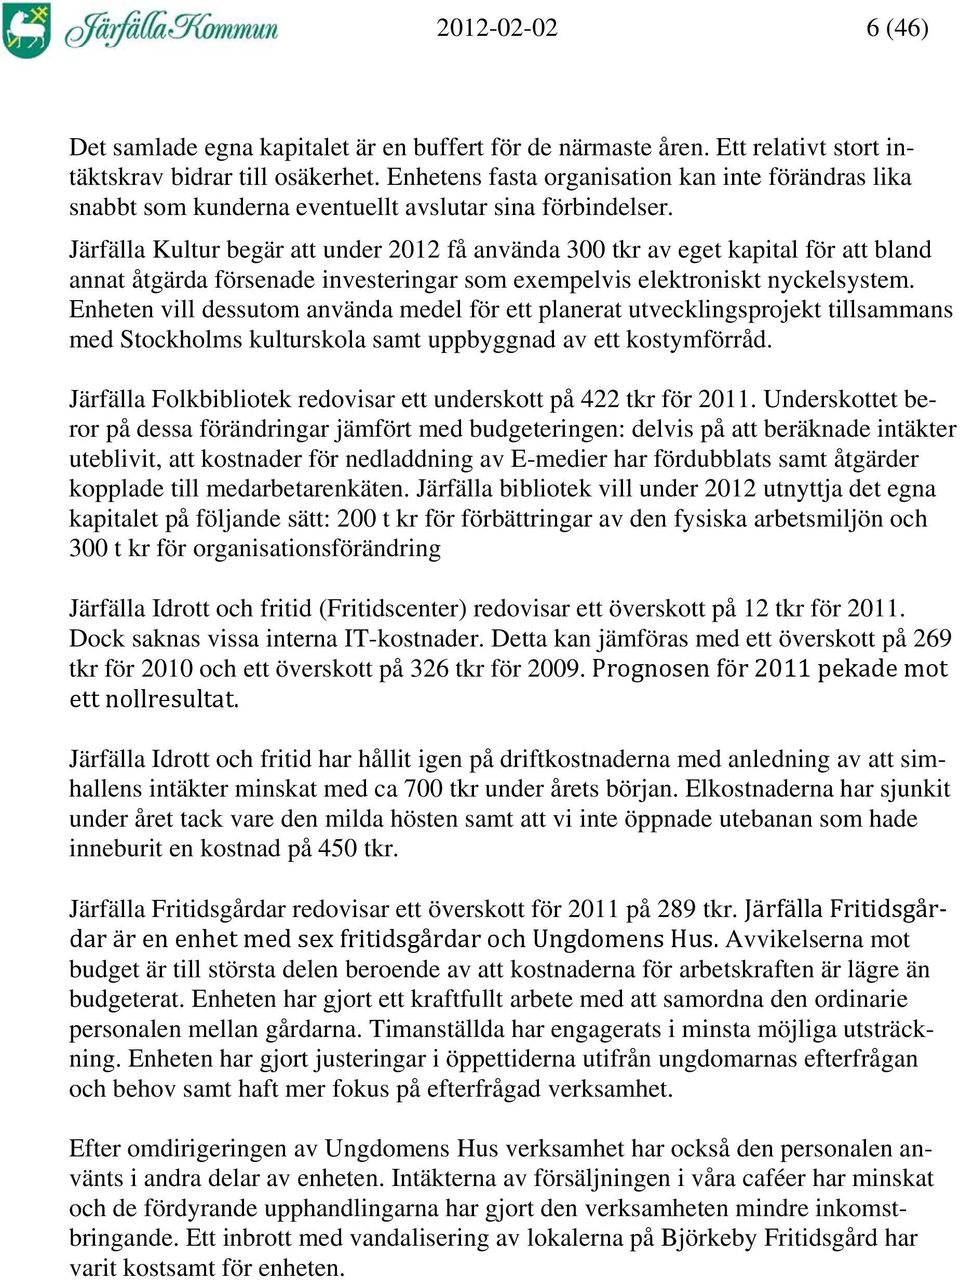 Järfälla Kultur begär att under 2012 få använda 300 tkr av eget kapital för att bland annat åtgärda försenade investeringar som exempelvis elektroniskt nyckelsystem.